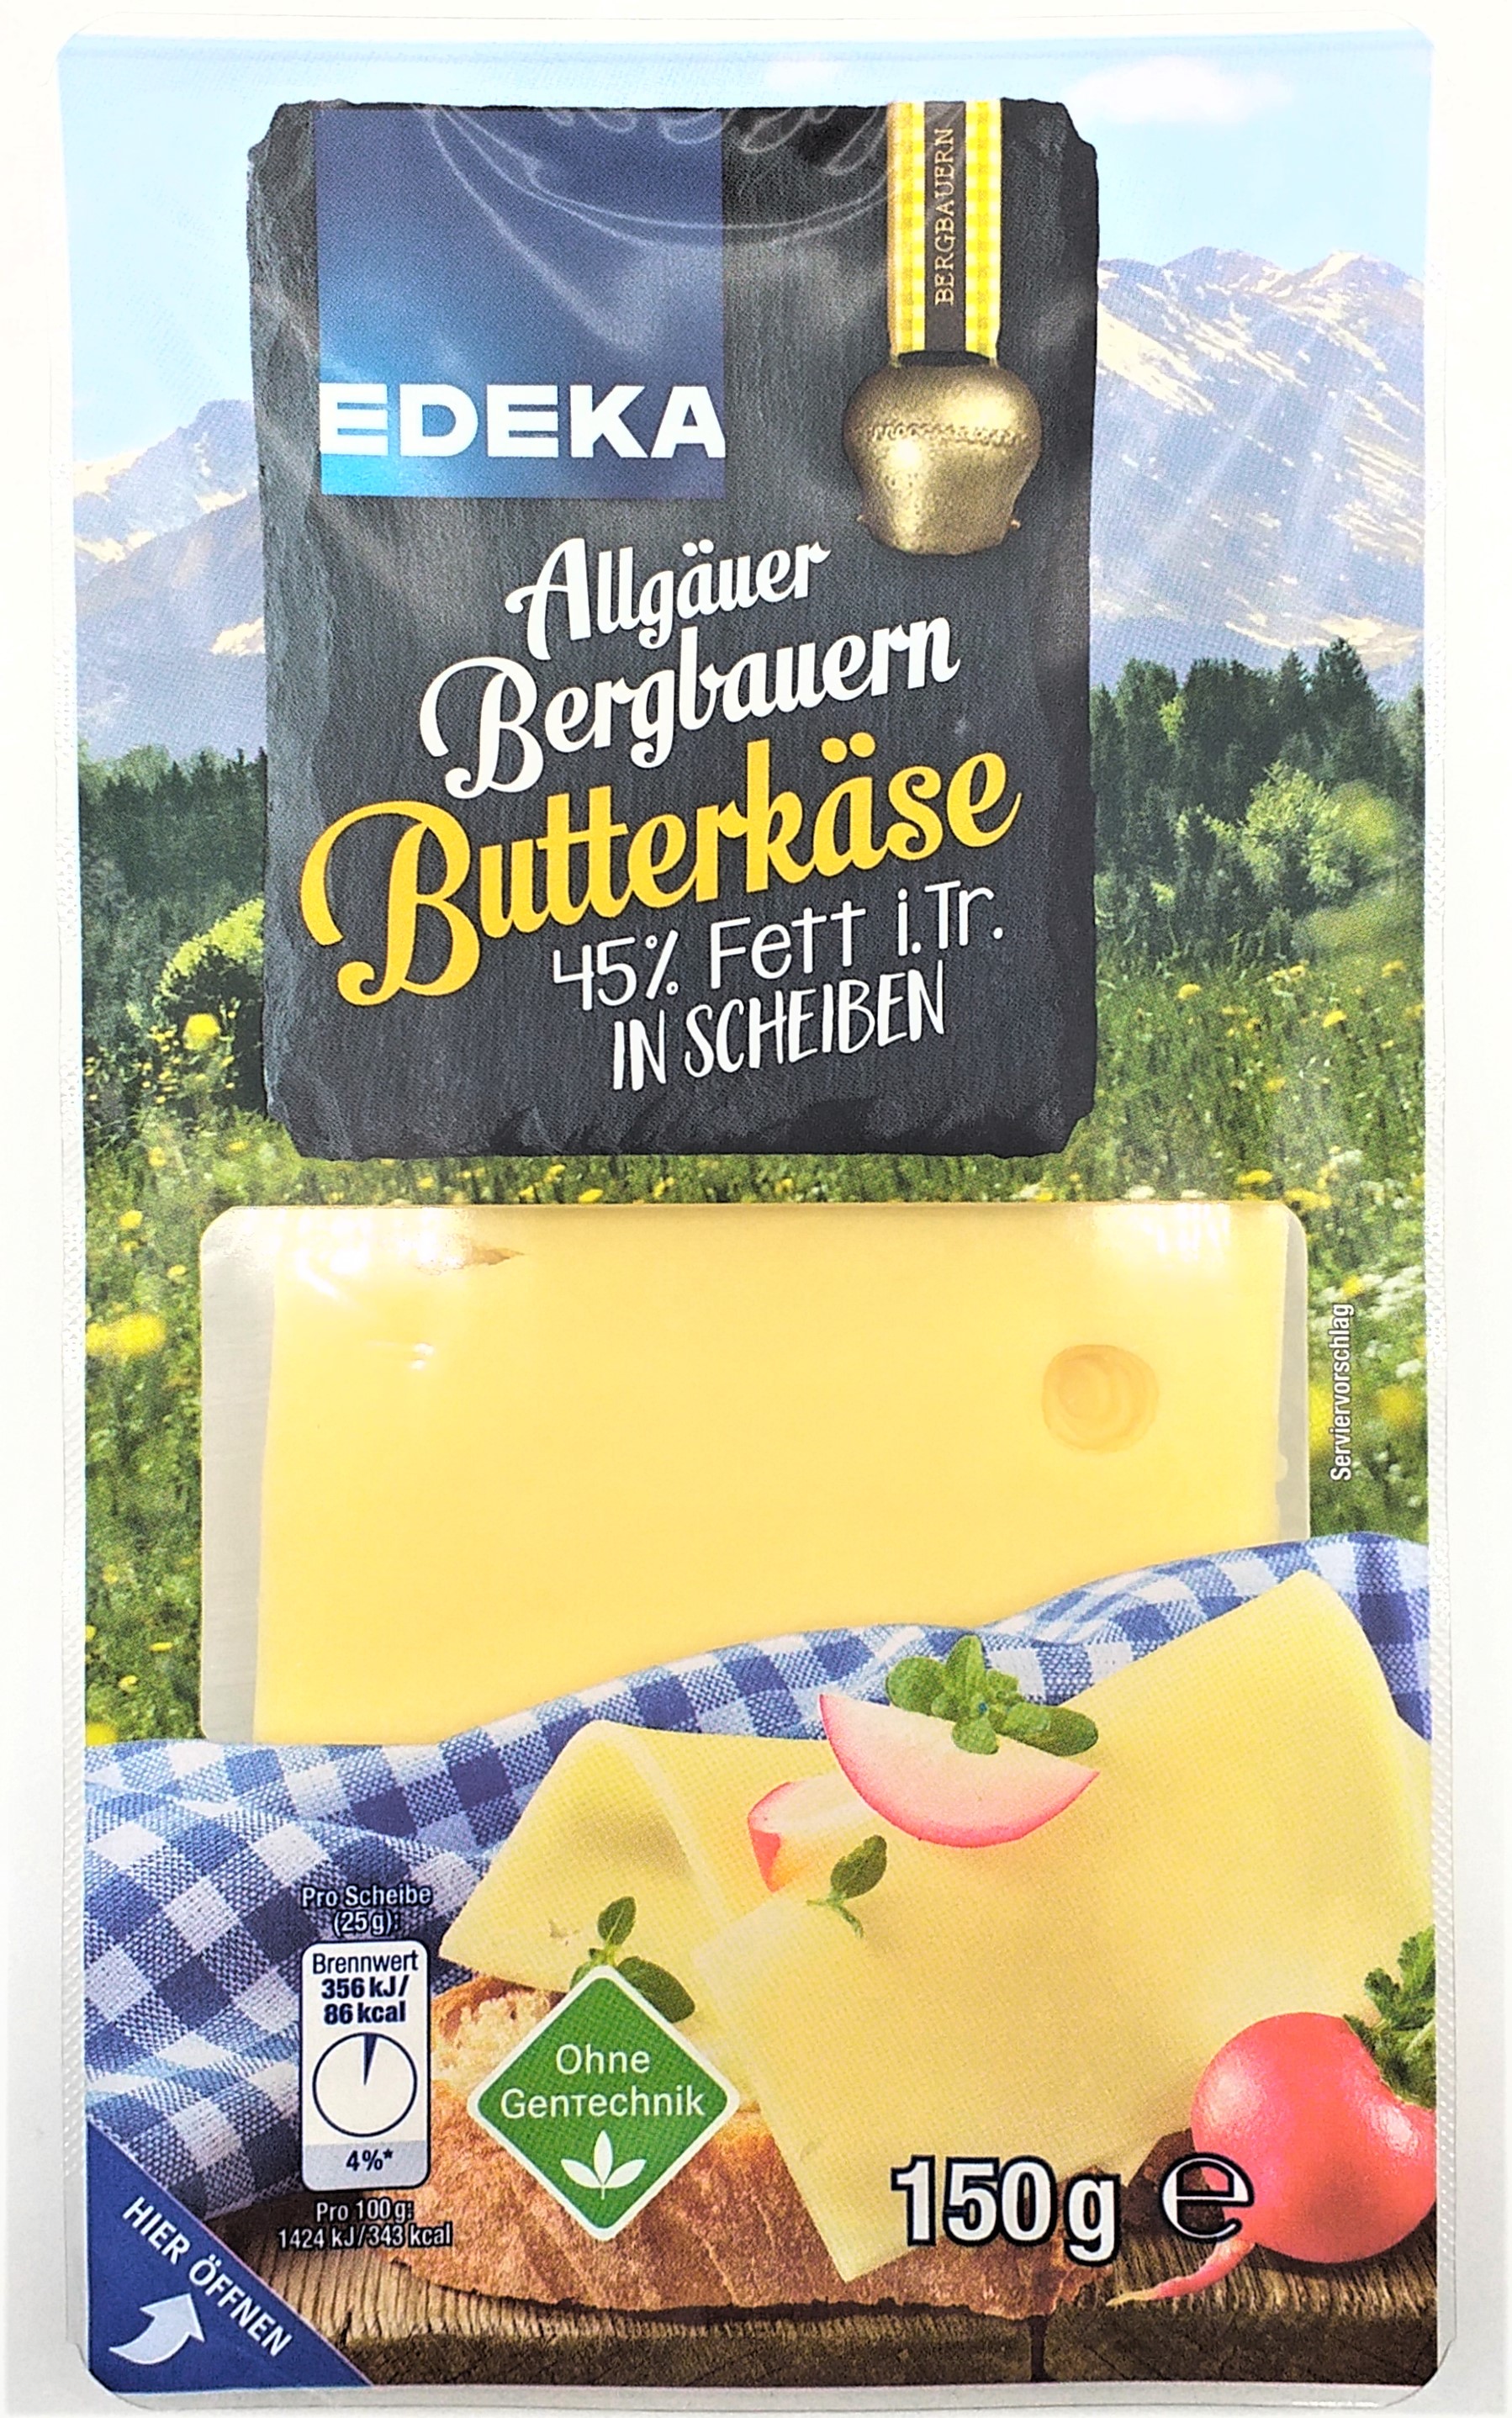 EDEKA Bergbauern Butterkäse Scheiben 48% Fett i. Tr. 150g